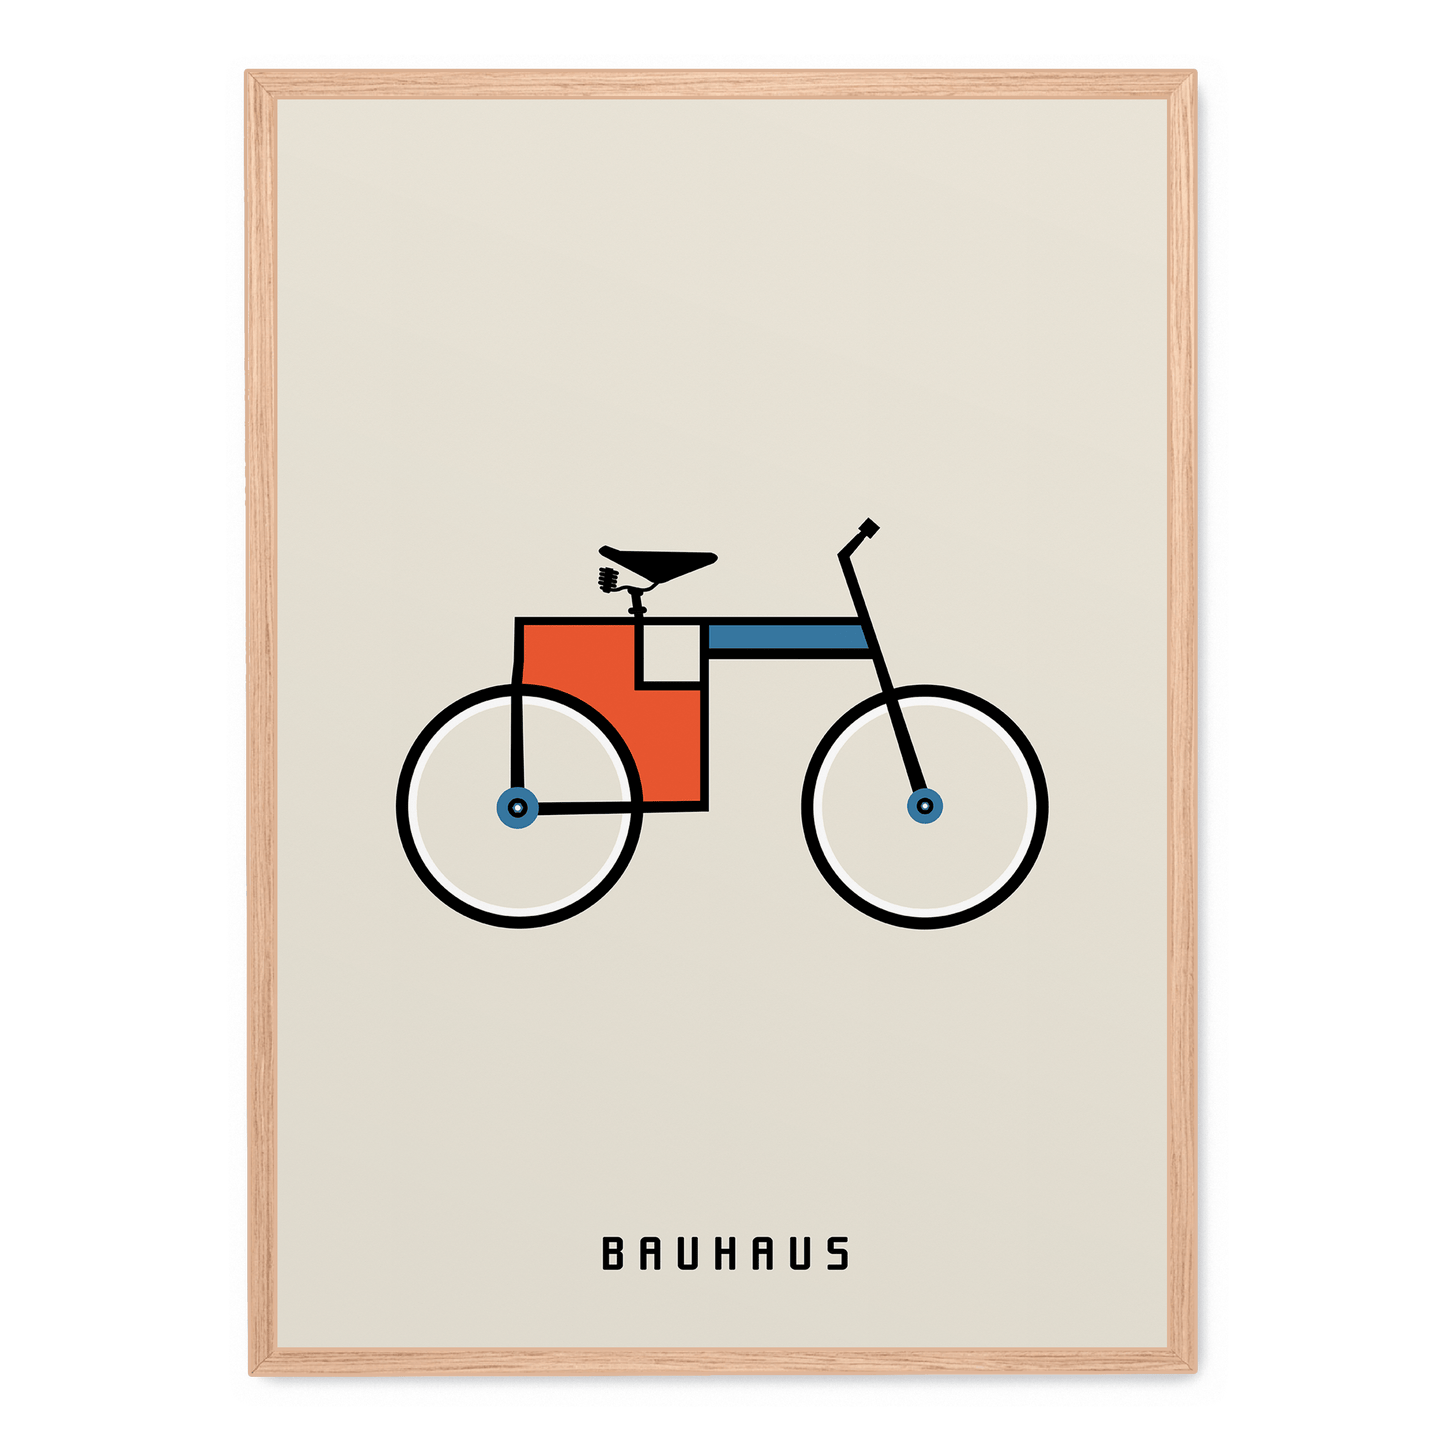 Bauhaus Bicycle